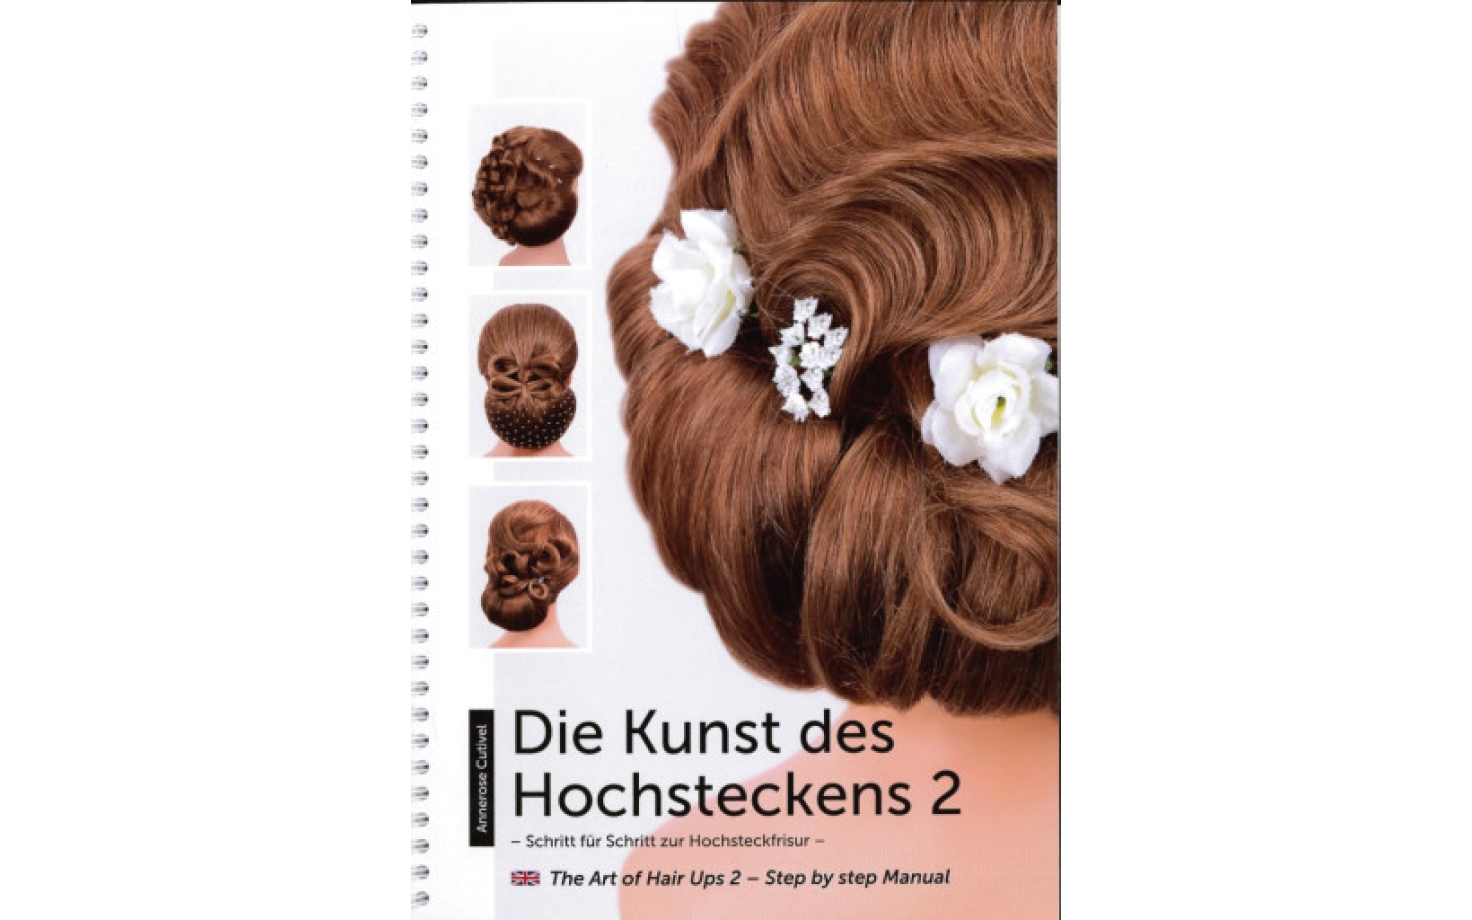 Frisurenbuch - Die Kunst des Hochsteckens